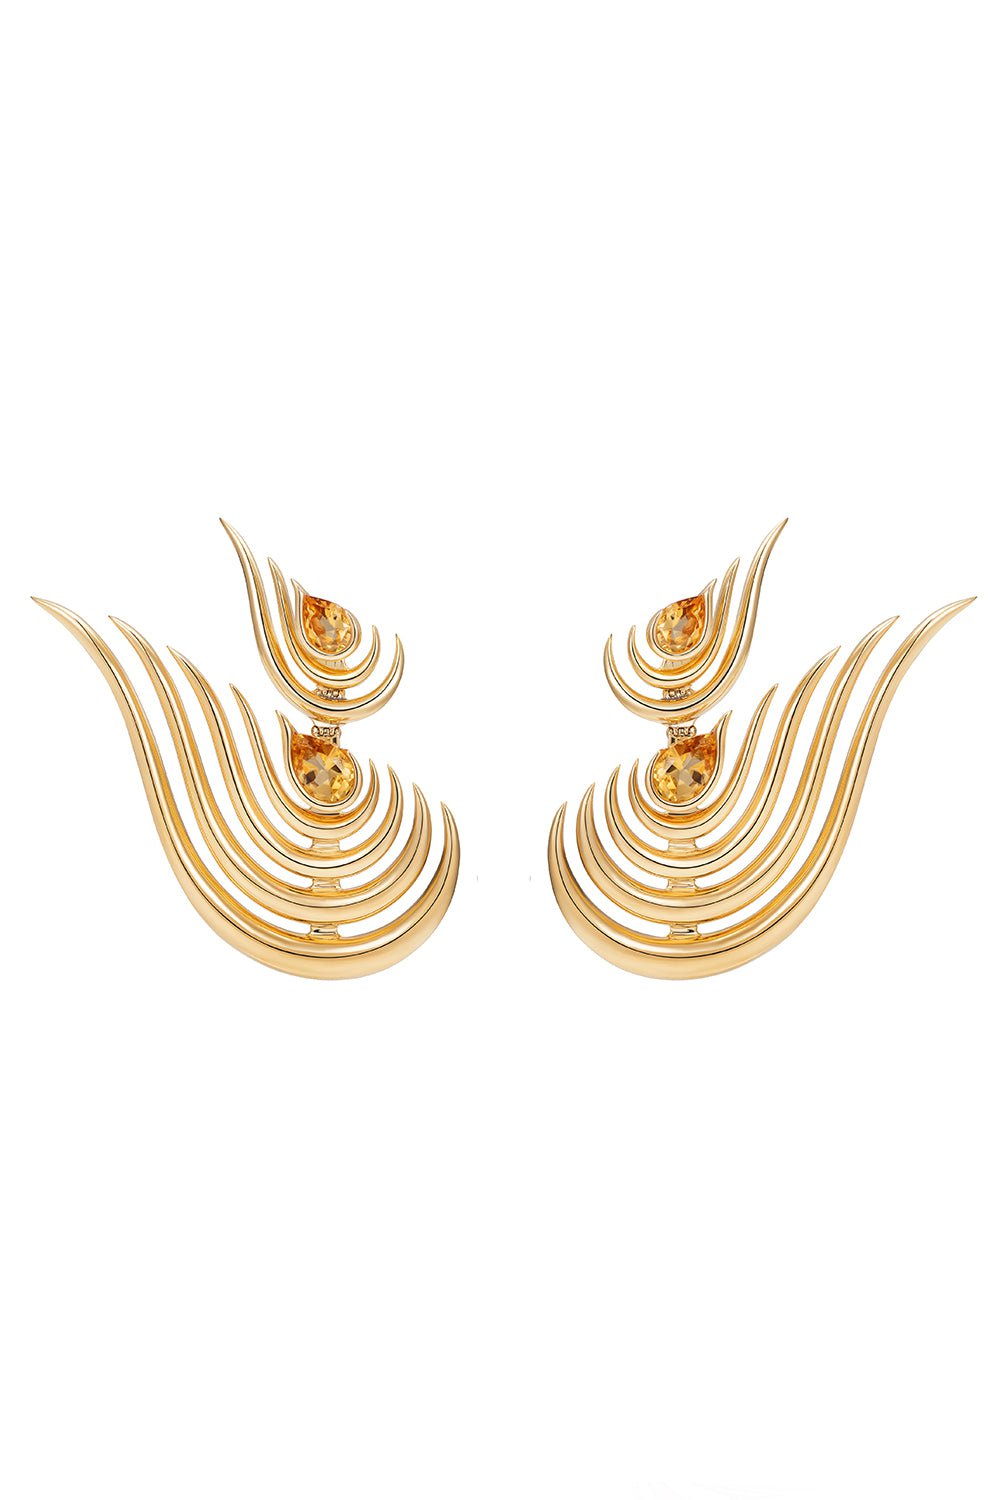 FERNANDO JORGE-Beacon Earrings-YELLOW GOLD